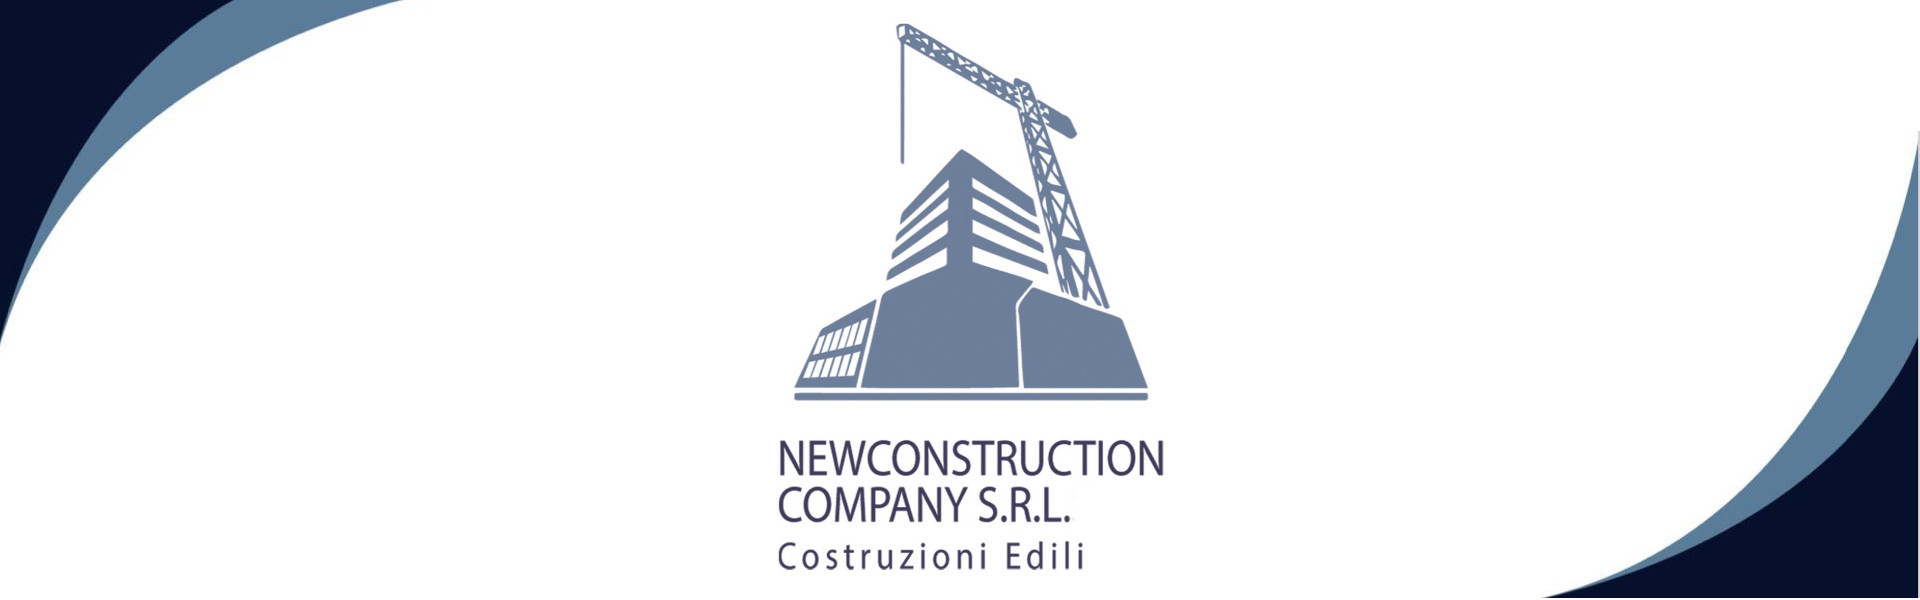 NEW CONSTRUCTION COMPANY SRL